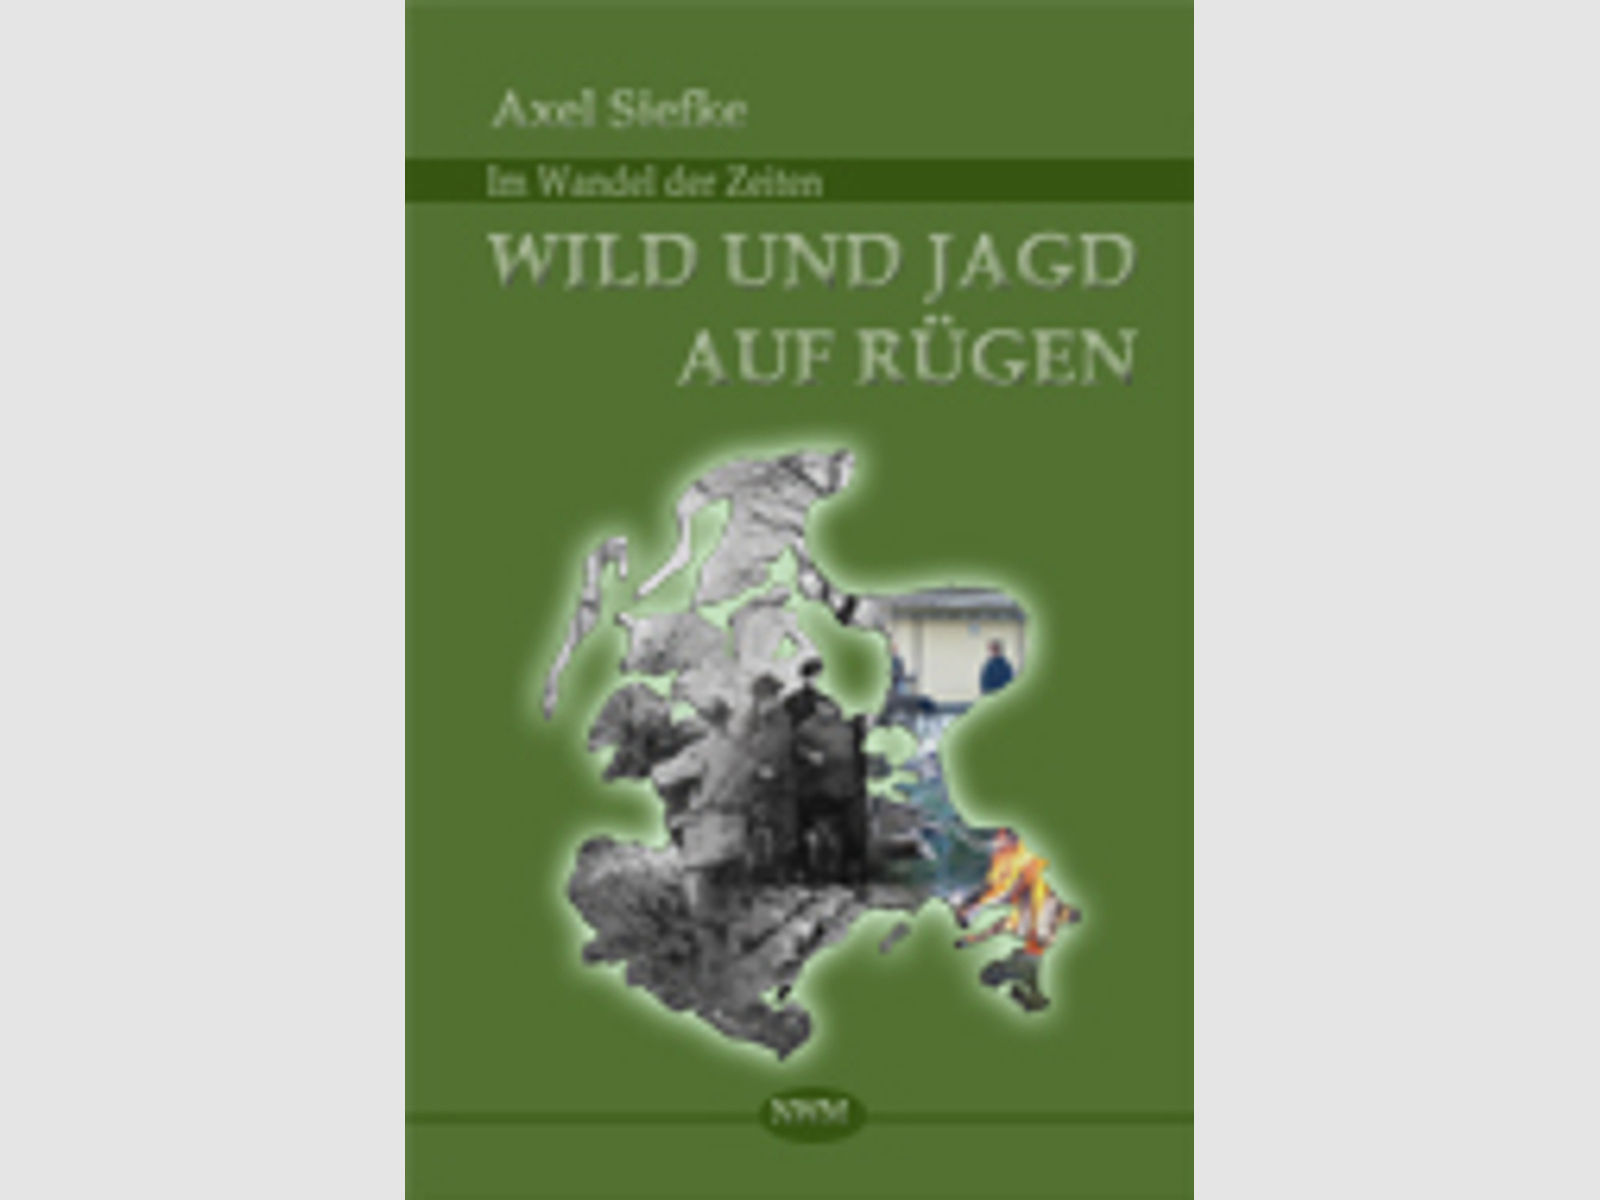 Siefke - Wild und Jagd auf Rügen